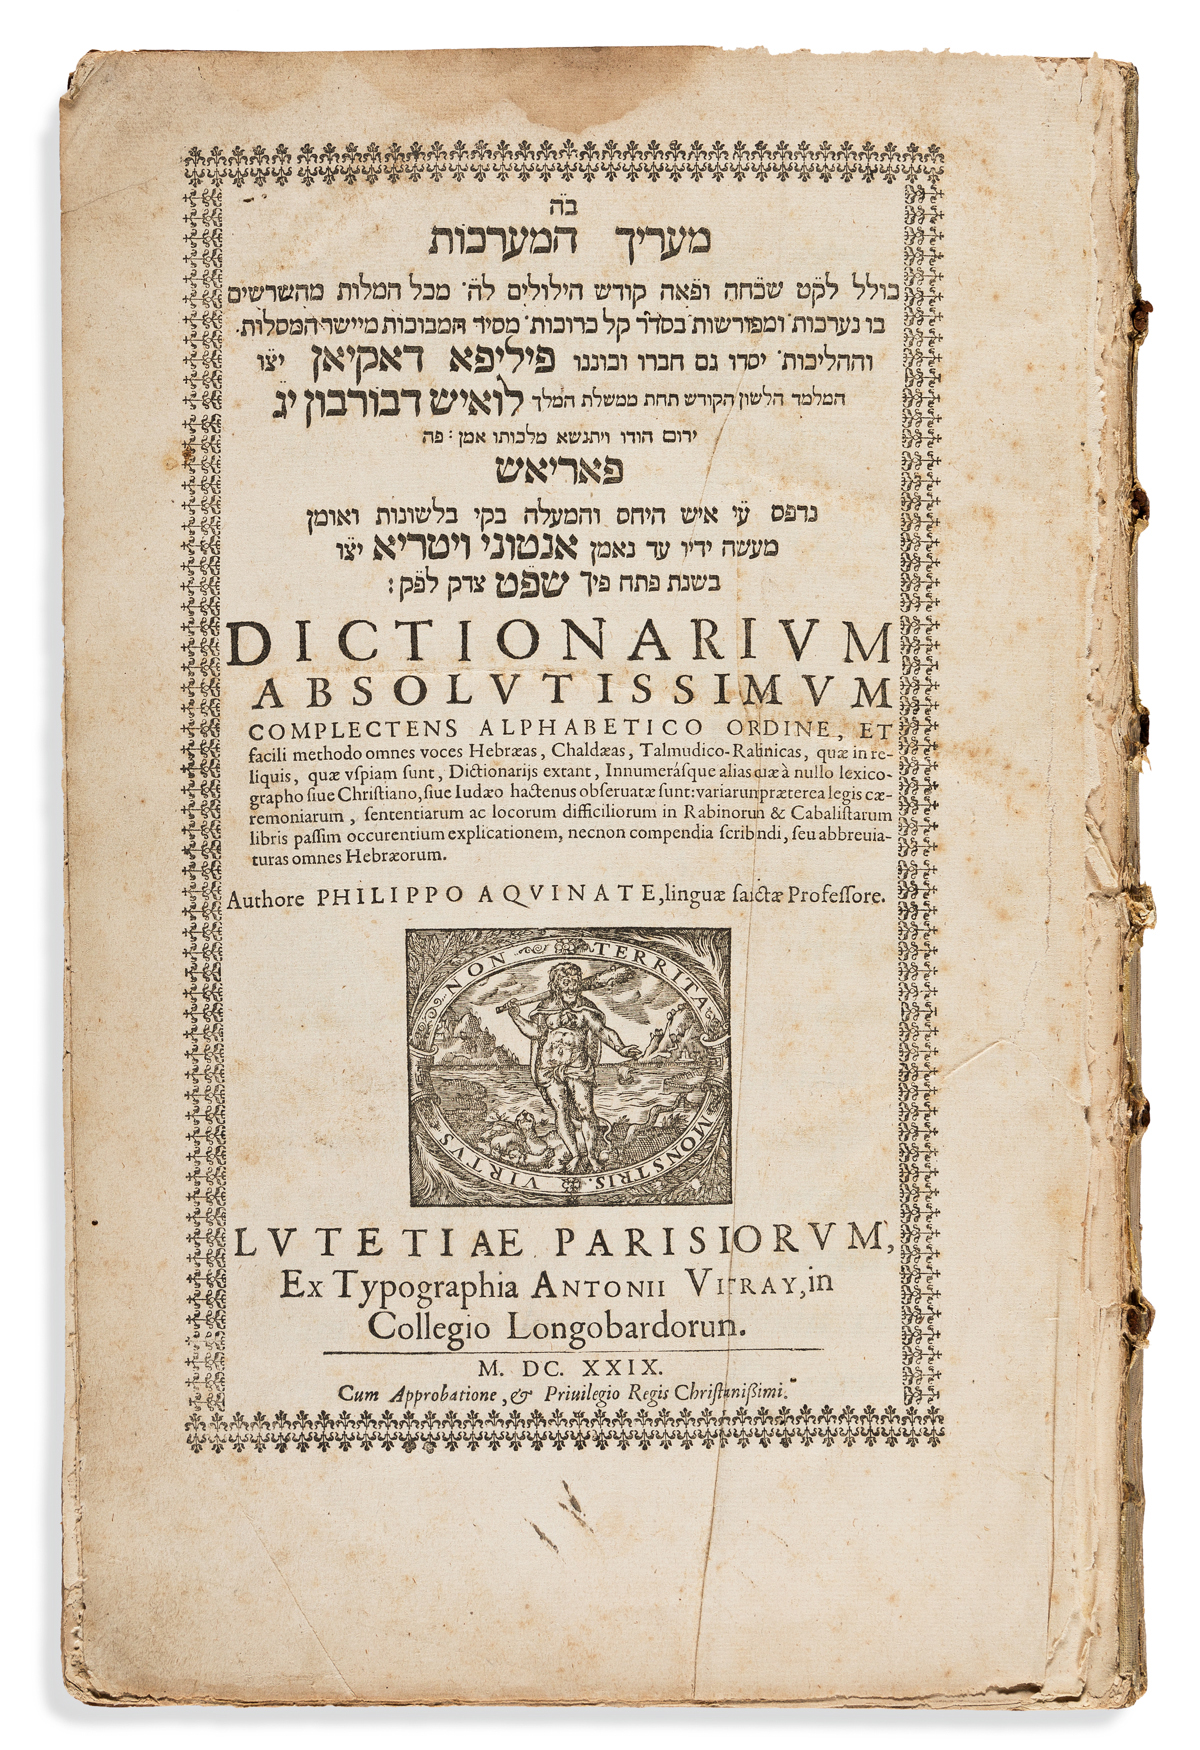 DAquin, Philippe (1578-1650) Dictionarium Absolutissimum Complectens Alphabetico.